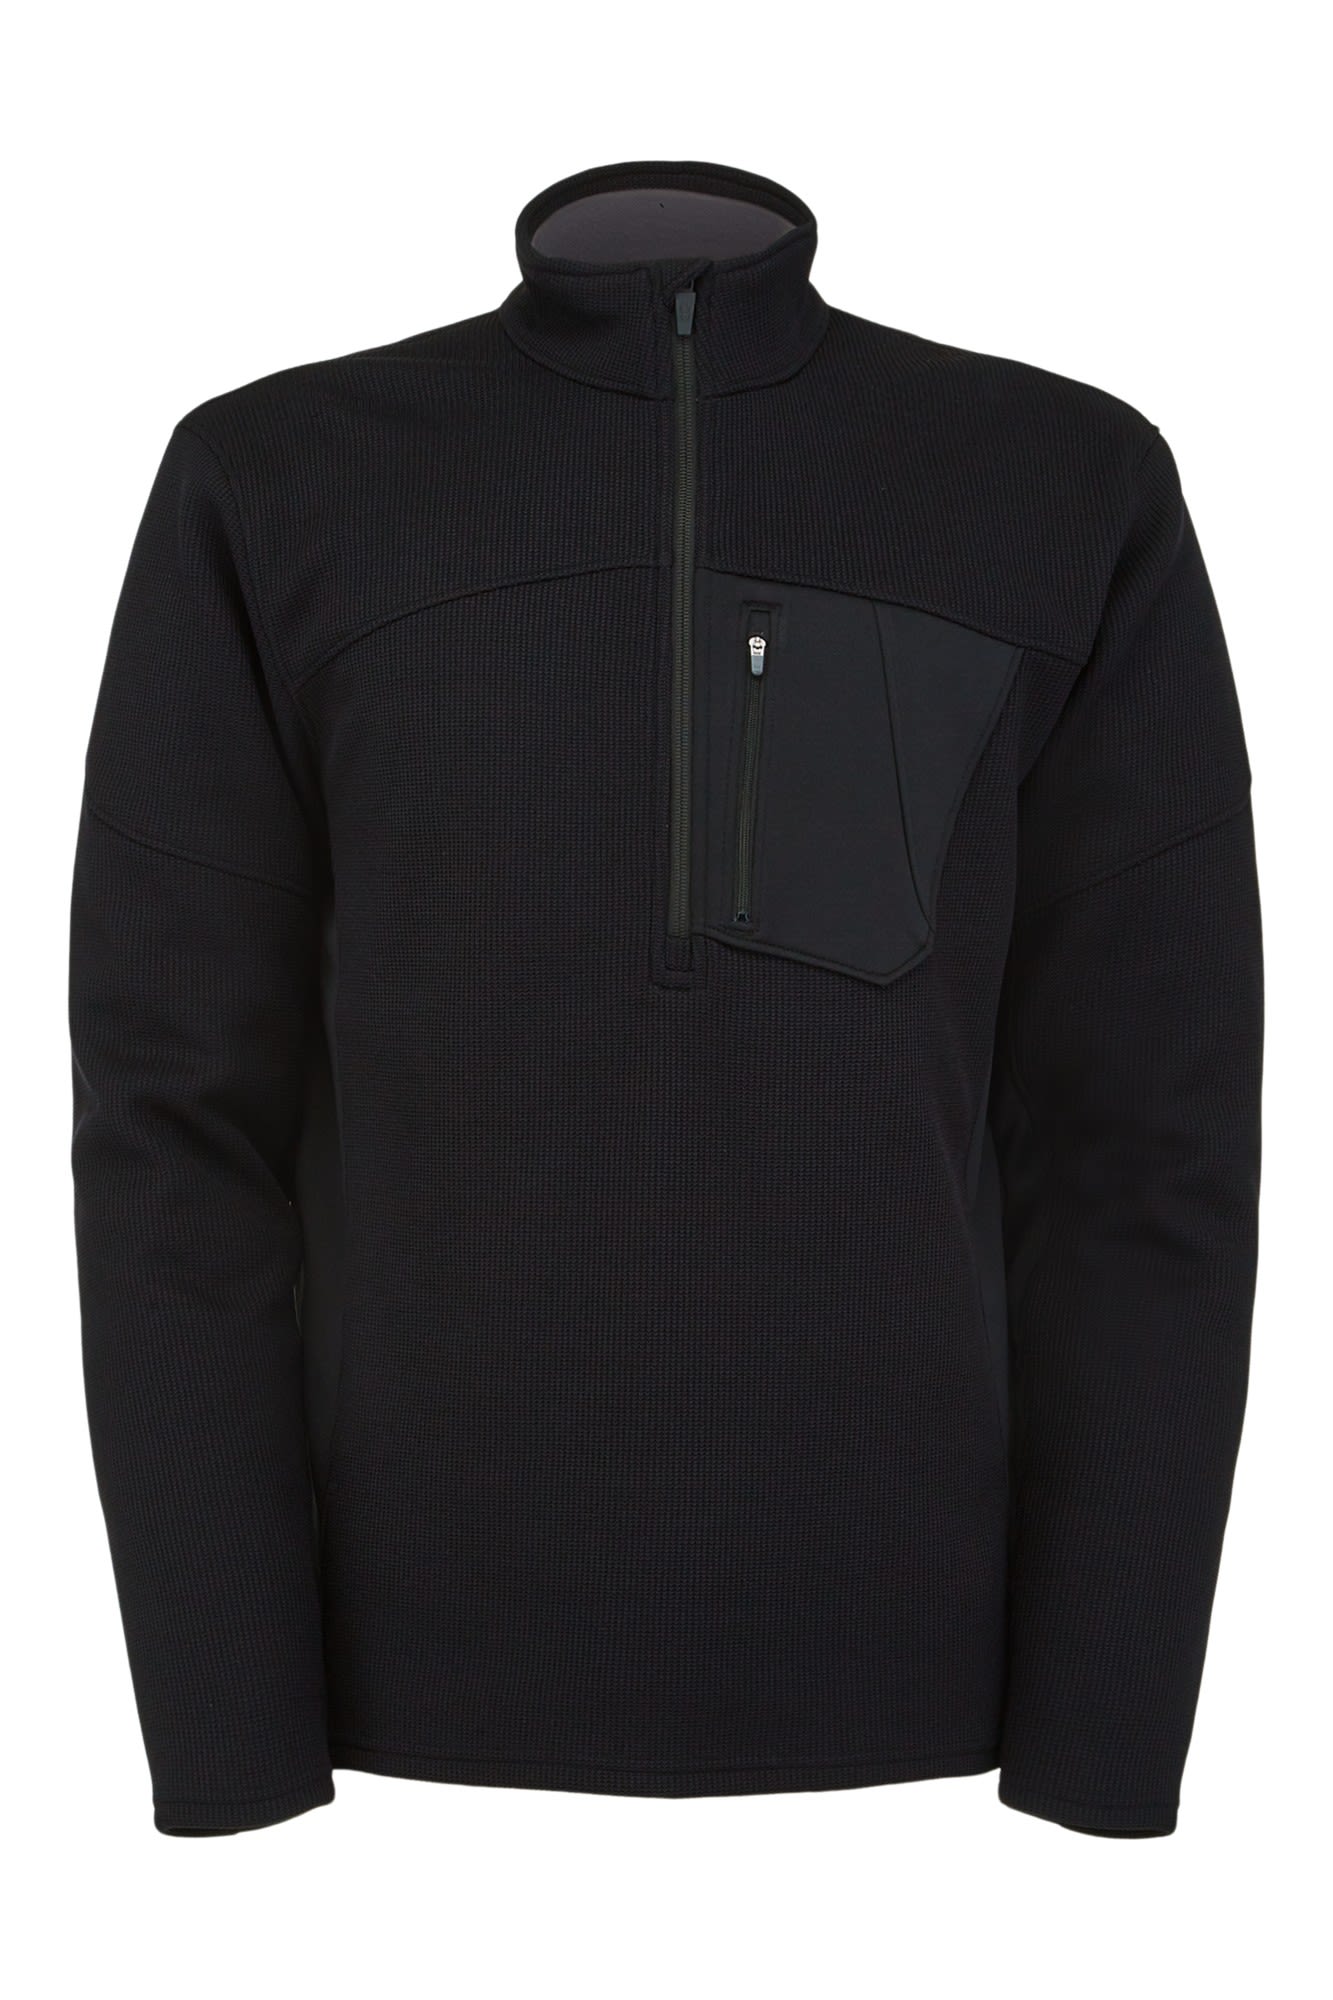 Spyder Bandit Half Zip Jacket Schwarz- Male Freizeitpullover- Grsse S - Farbe Black